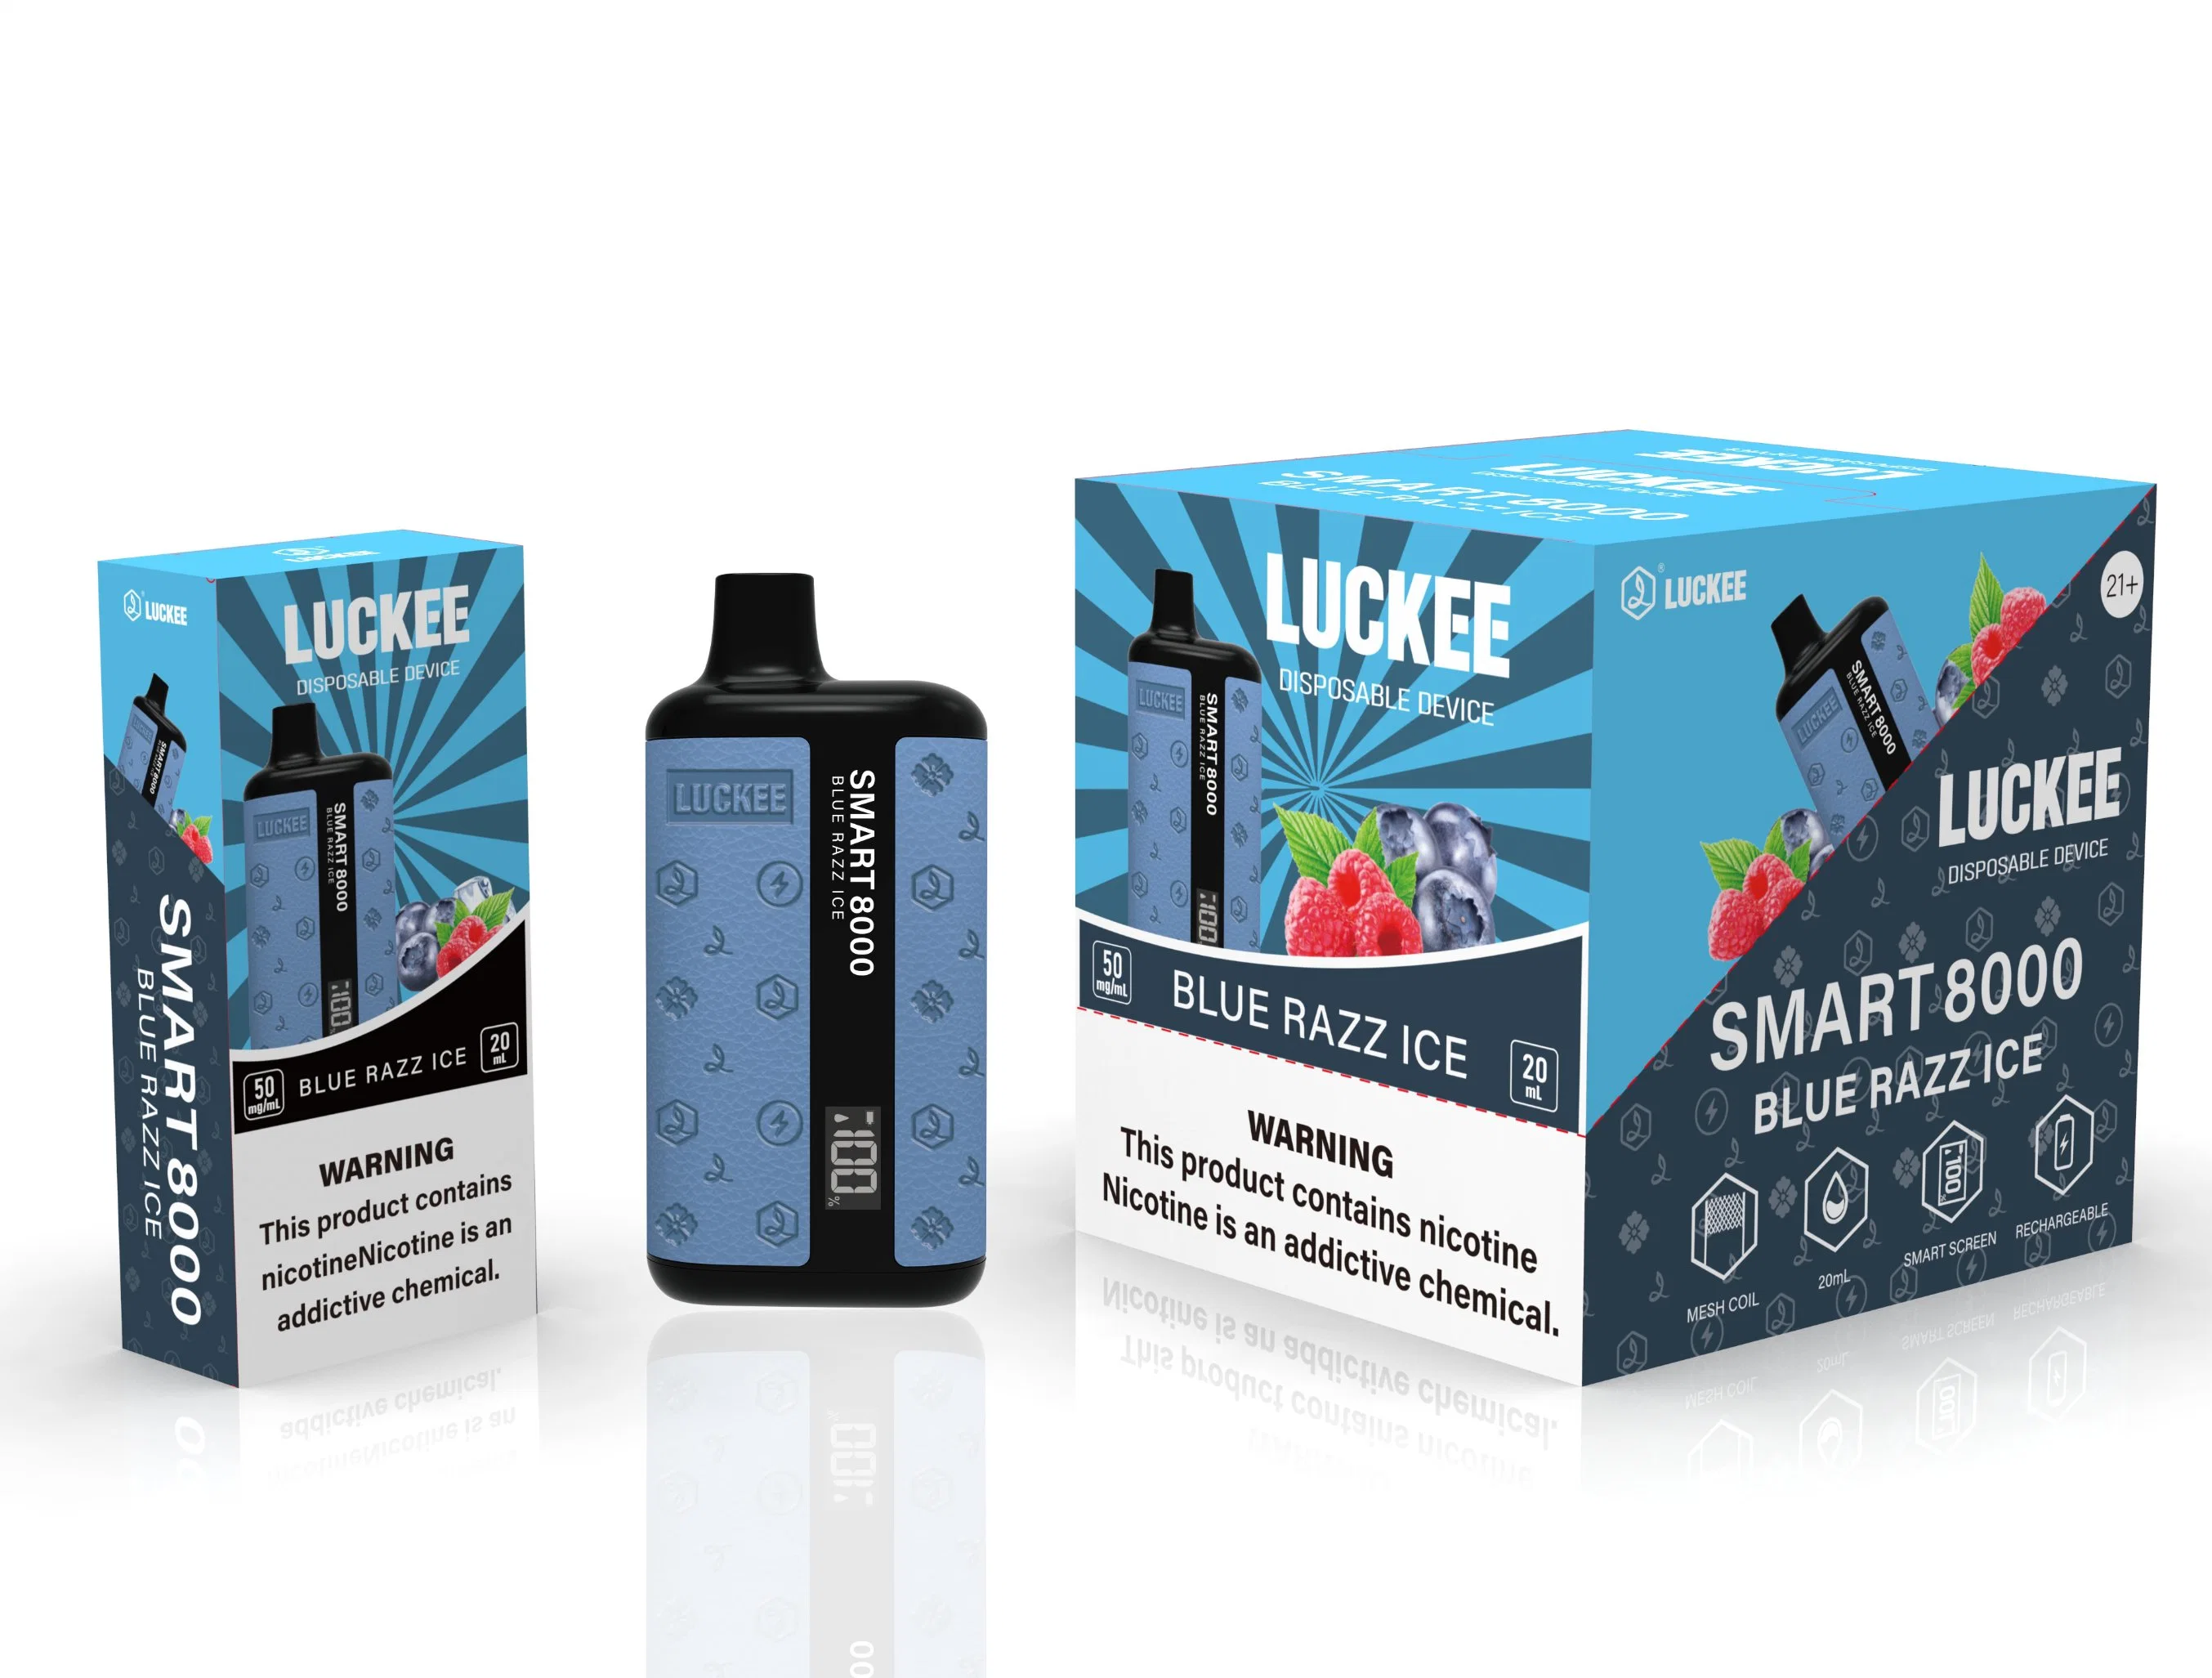 La cigarette électronique Puff Smart 8000 de Vape jetable la plus populaire Vaporisateur à barres Atomizer